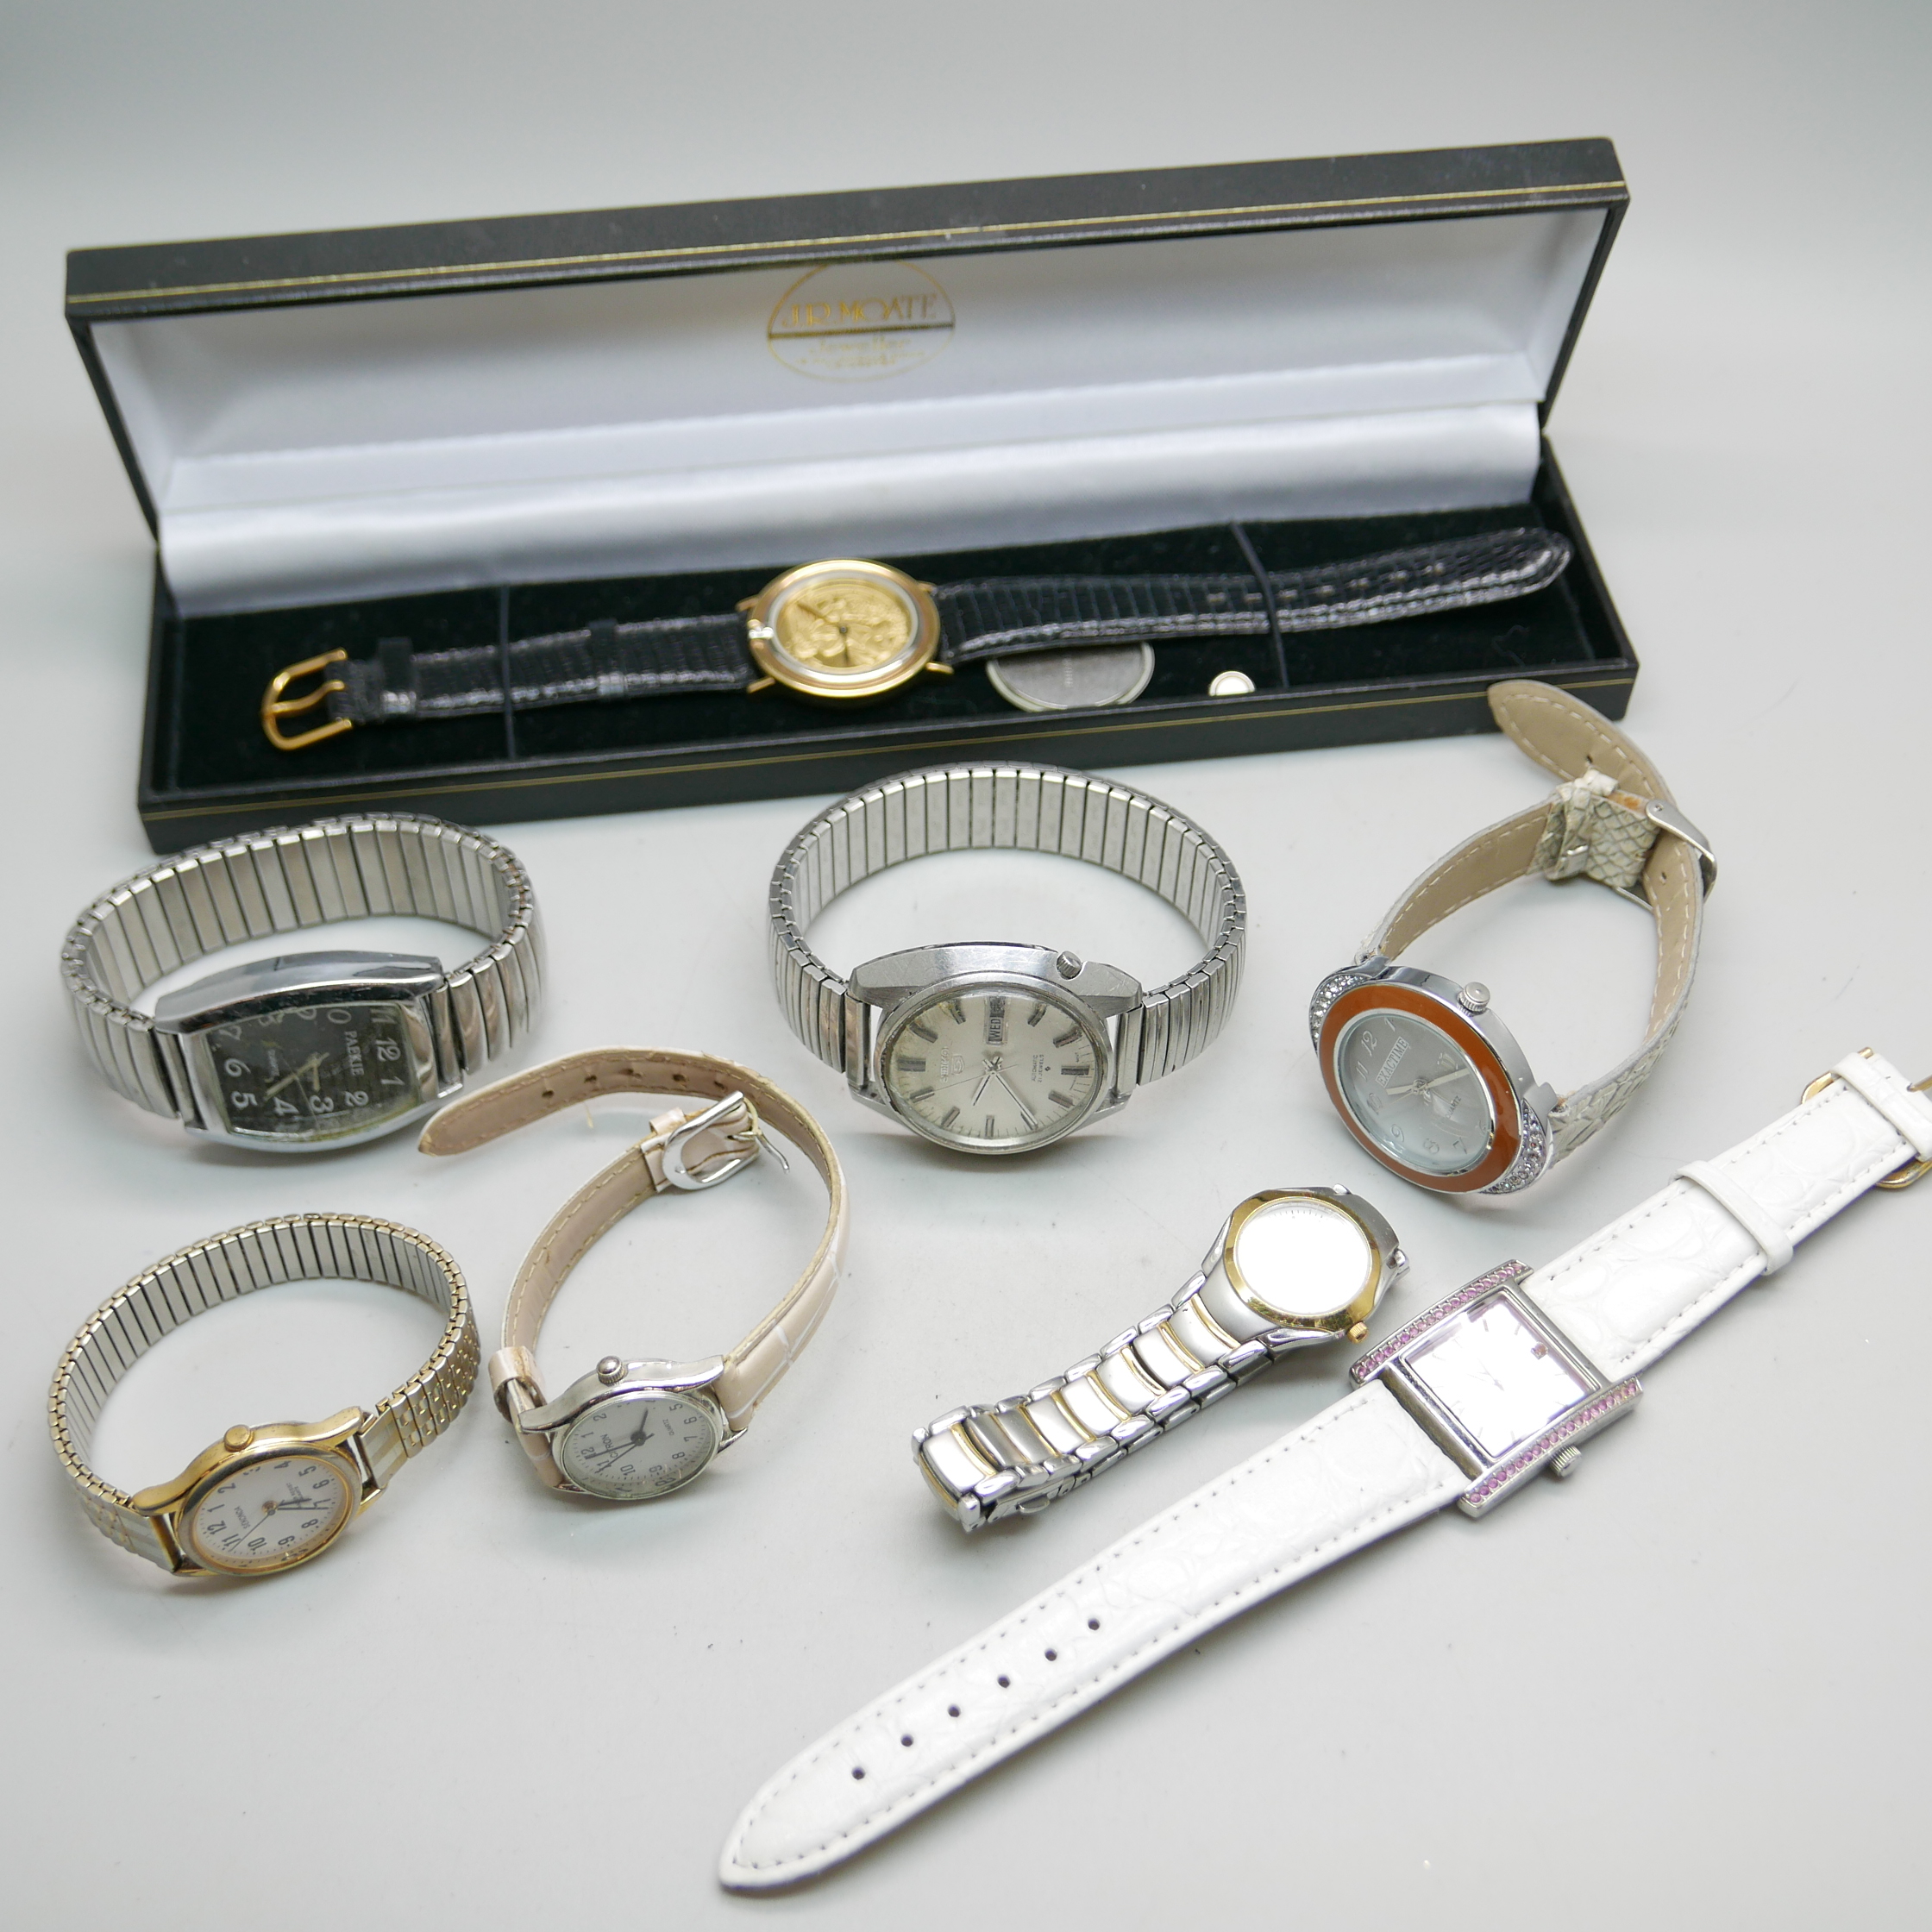 Wristwatches, Seiko 5 automatic day date movement 6119, Sekonda, etc.